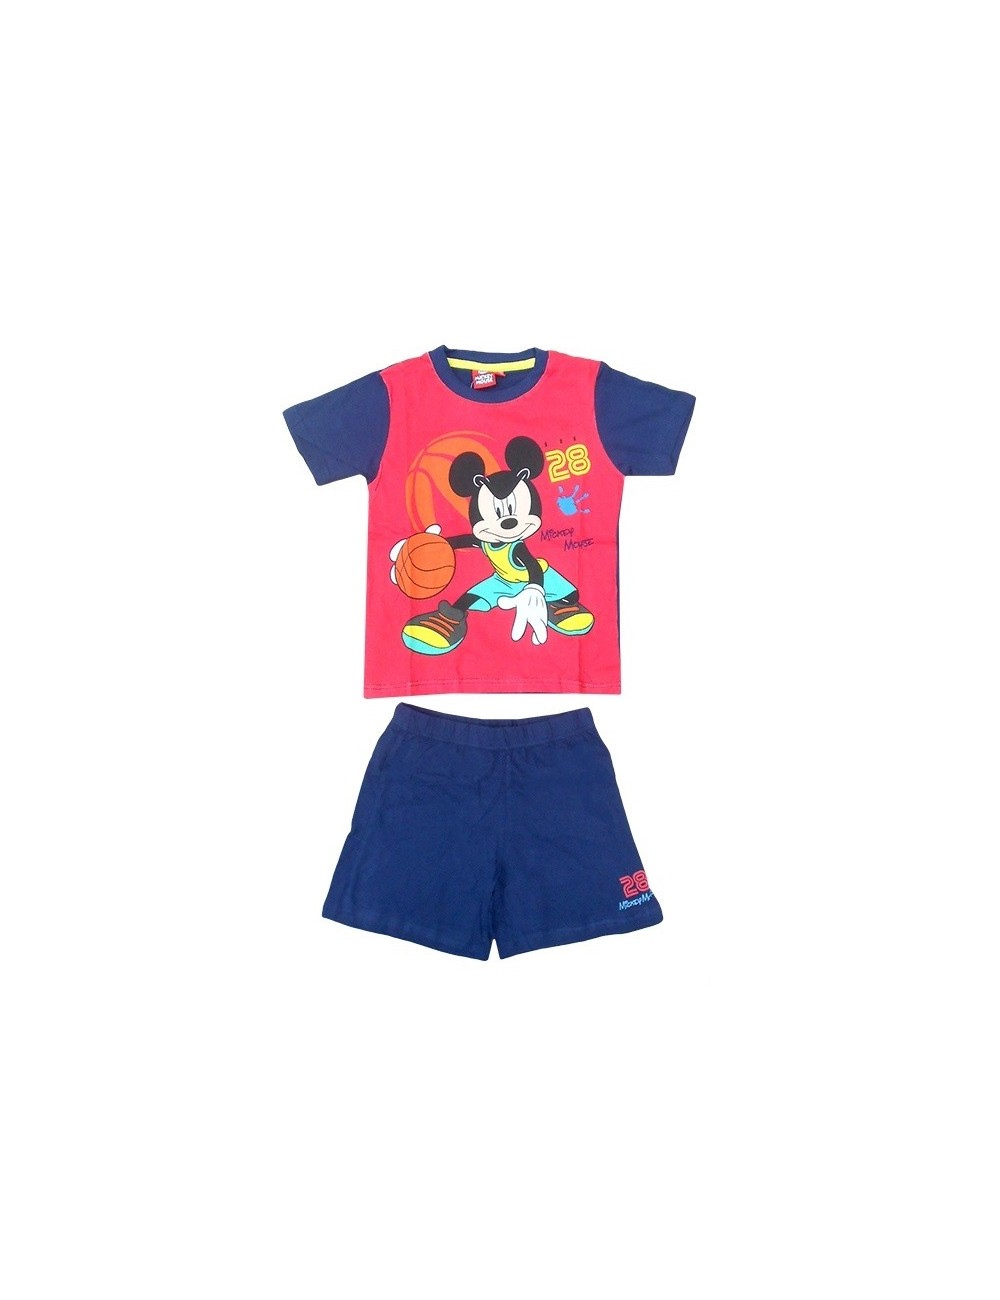 Pijama de vara copii, Disney Mikey Mouse, rosu-bleumarin